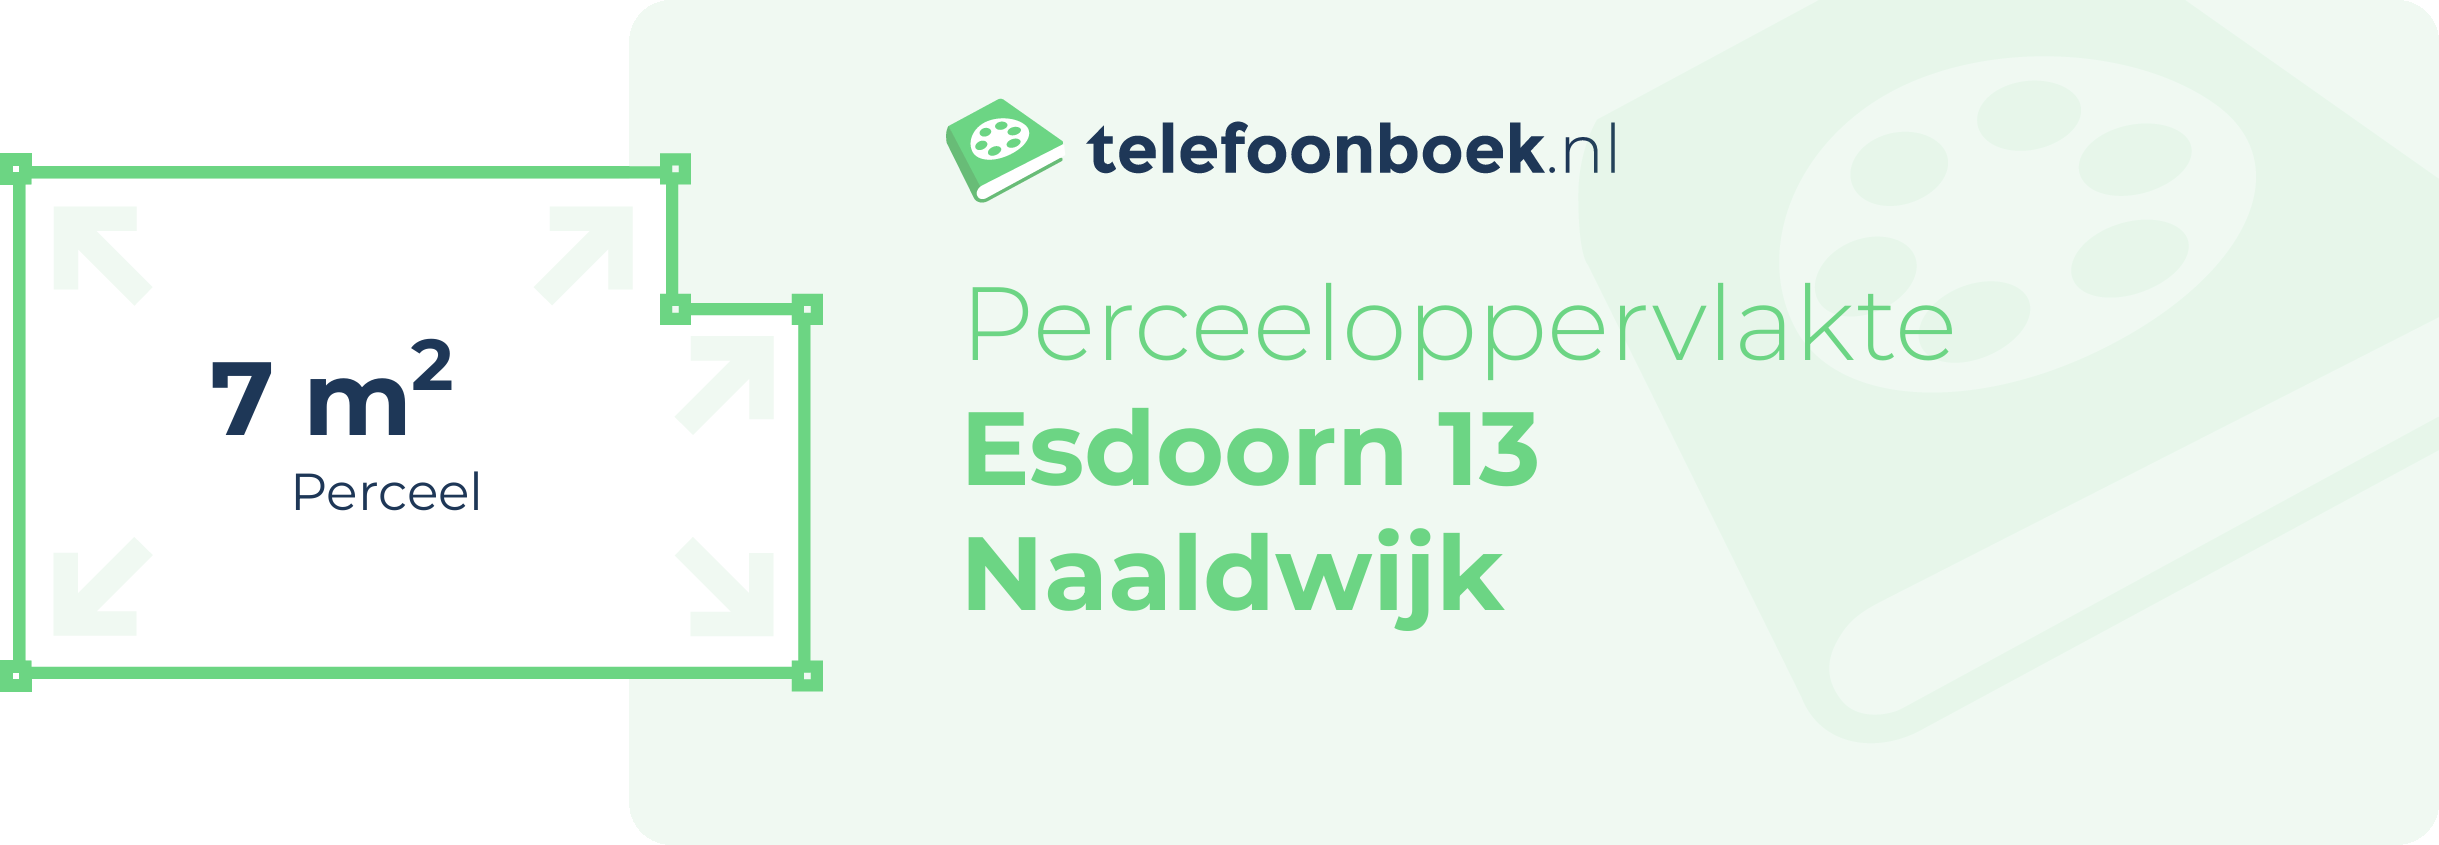 Perceeloppervlakte Esdoorn 13 Naaldwijk